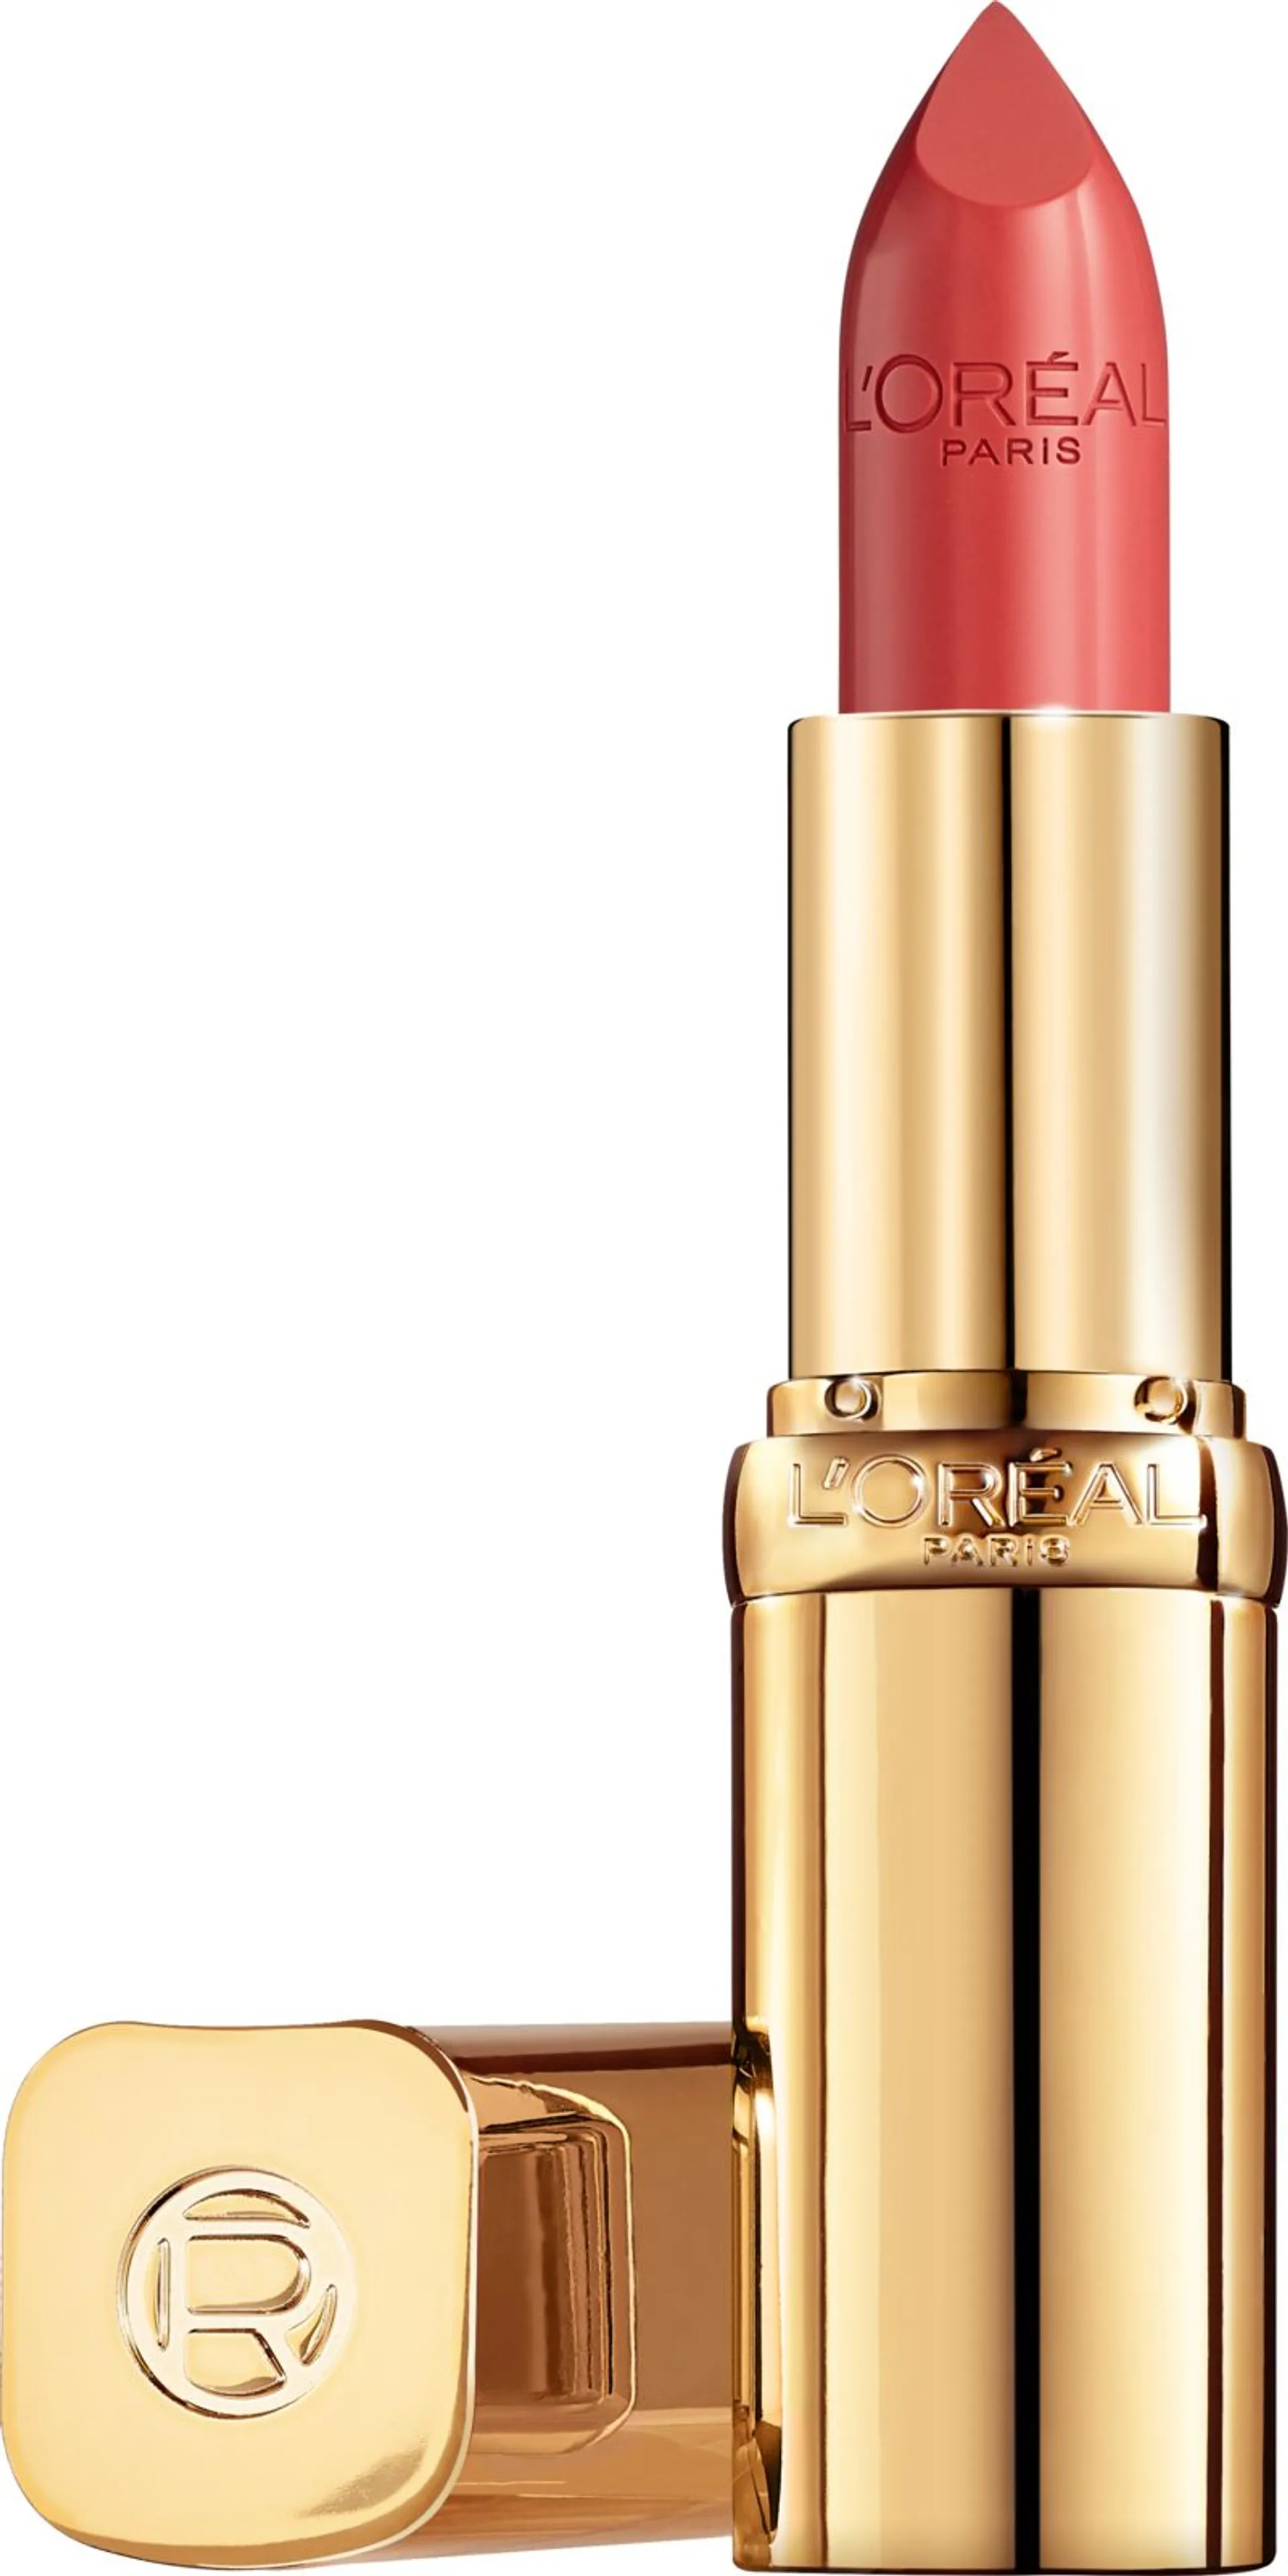 L'Oréal Paris Color Riche Satin 108 Brun Cuivre huulipuna 4,8 g